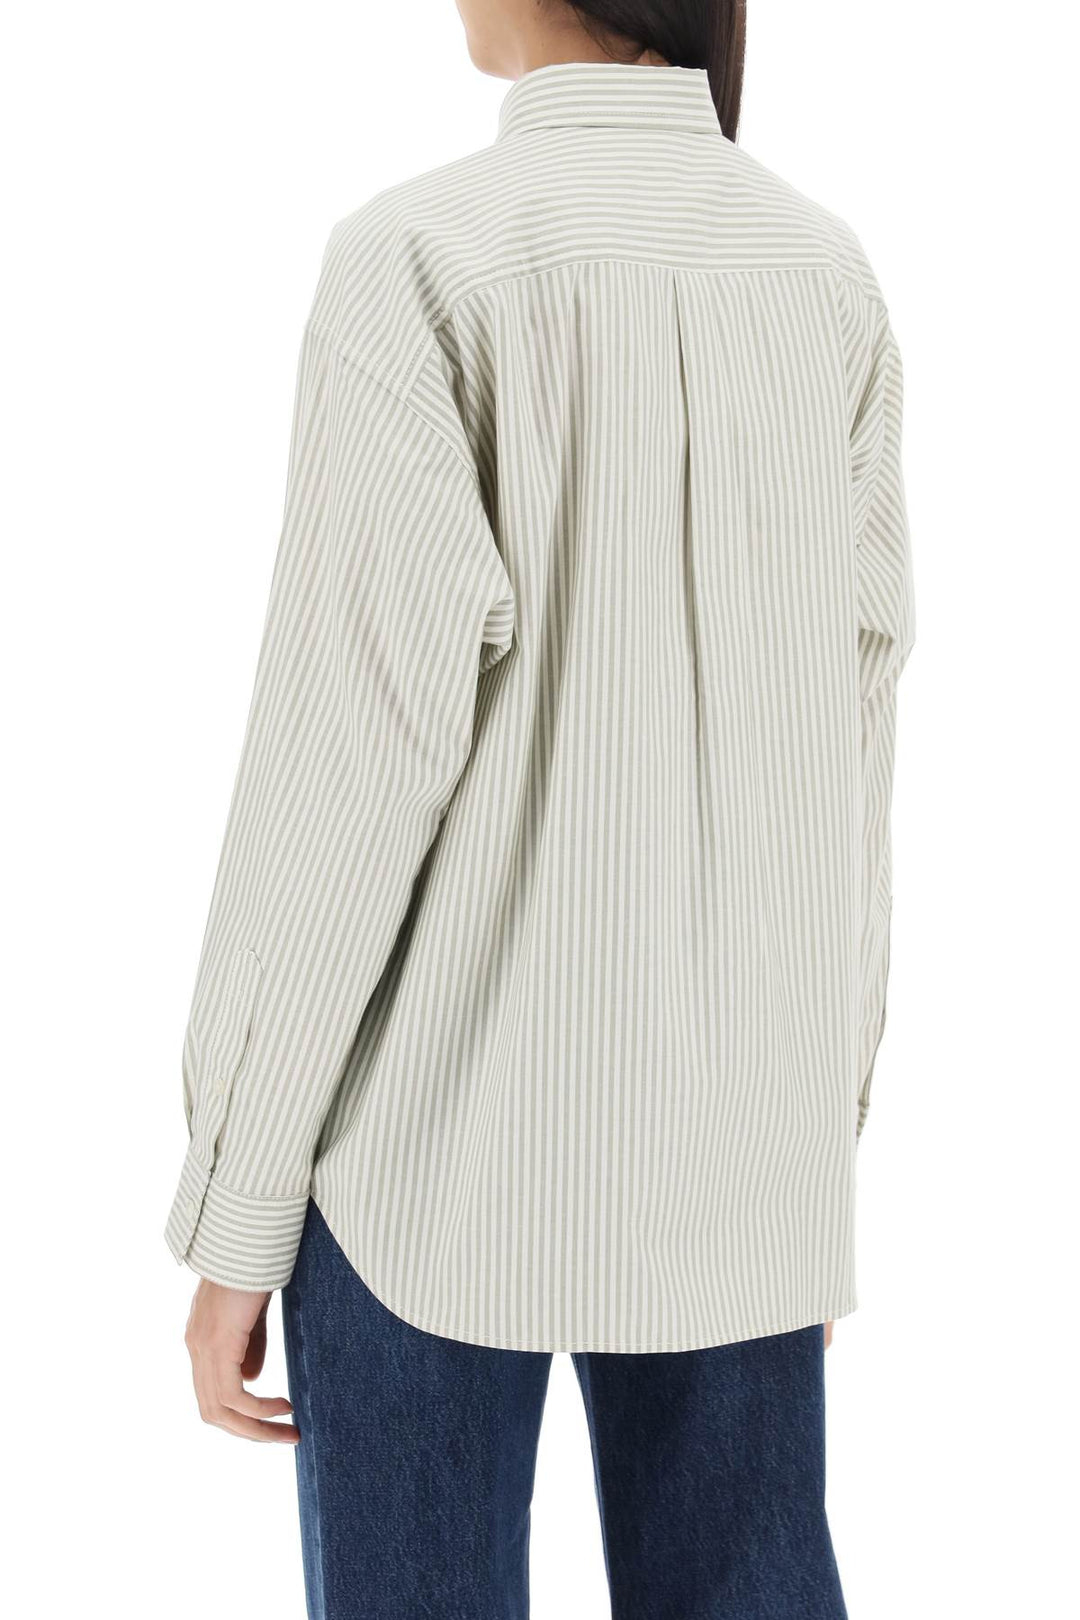 Toteme Striped Oxford Shirt   White